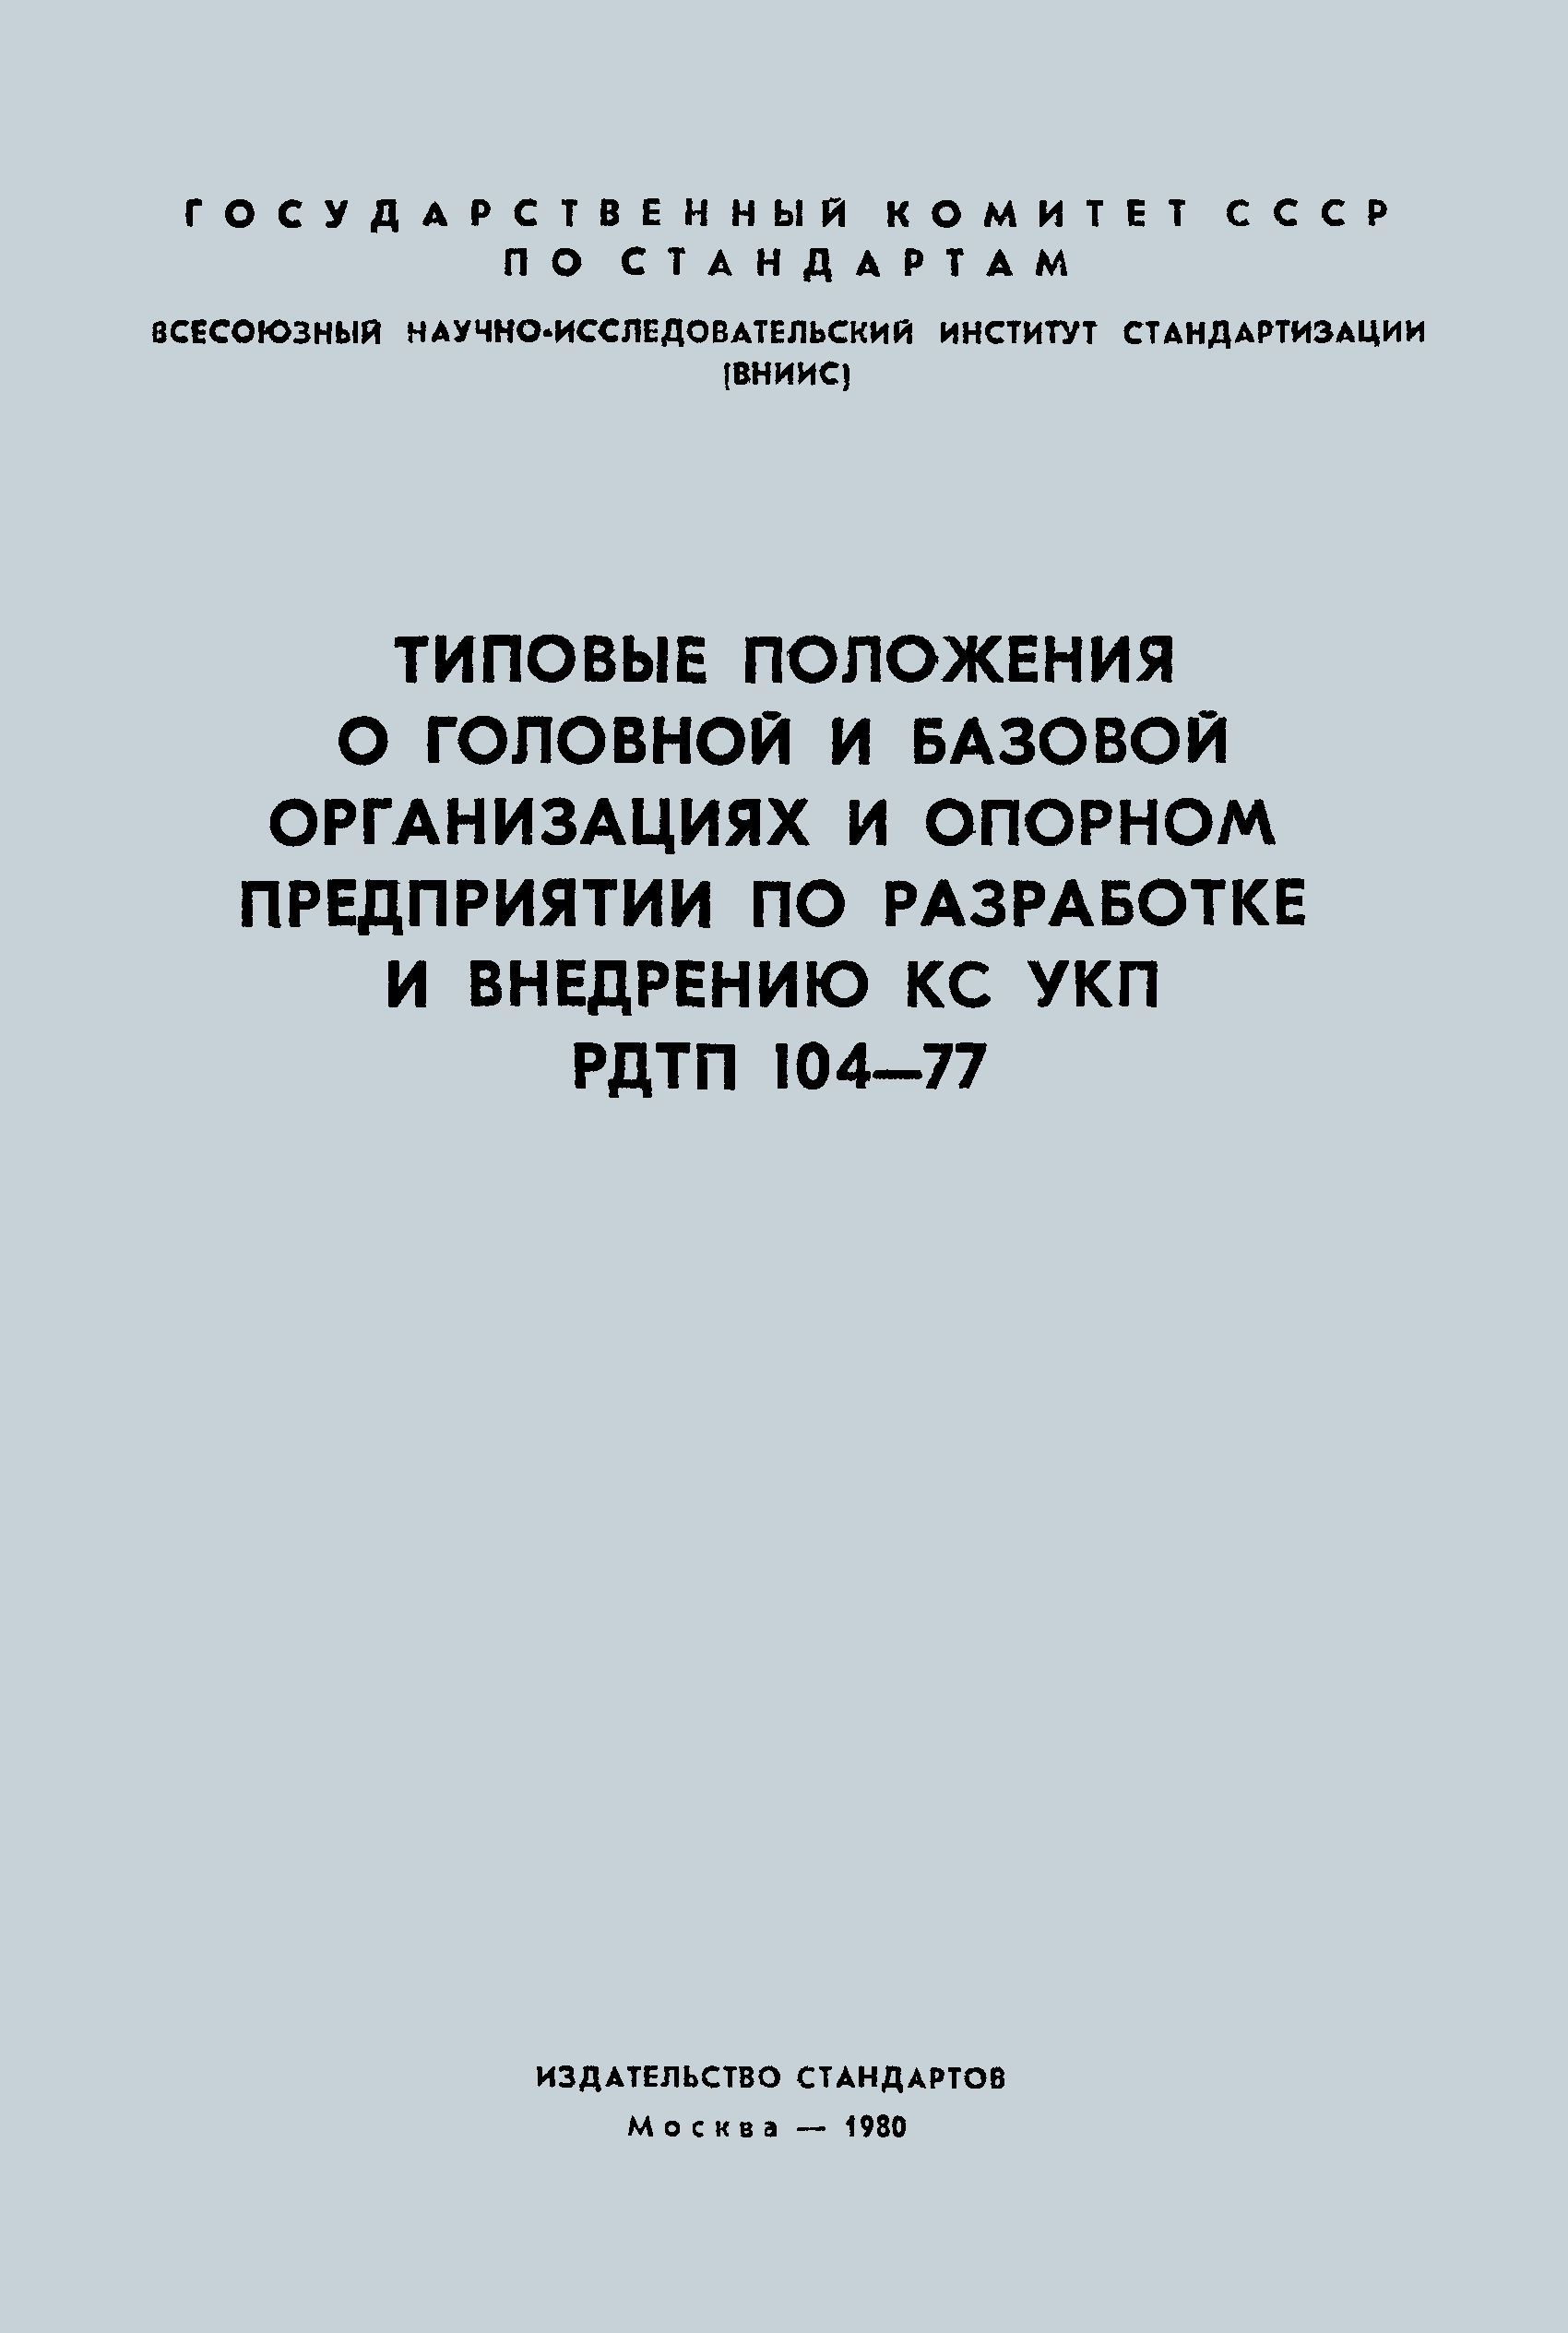 РДТП 104-77